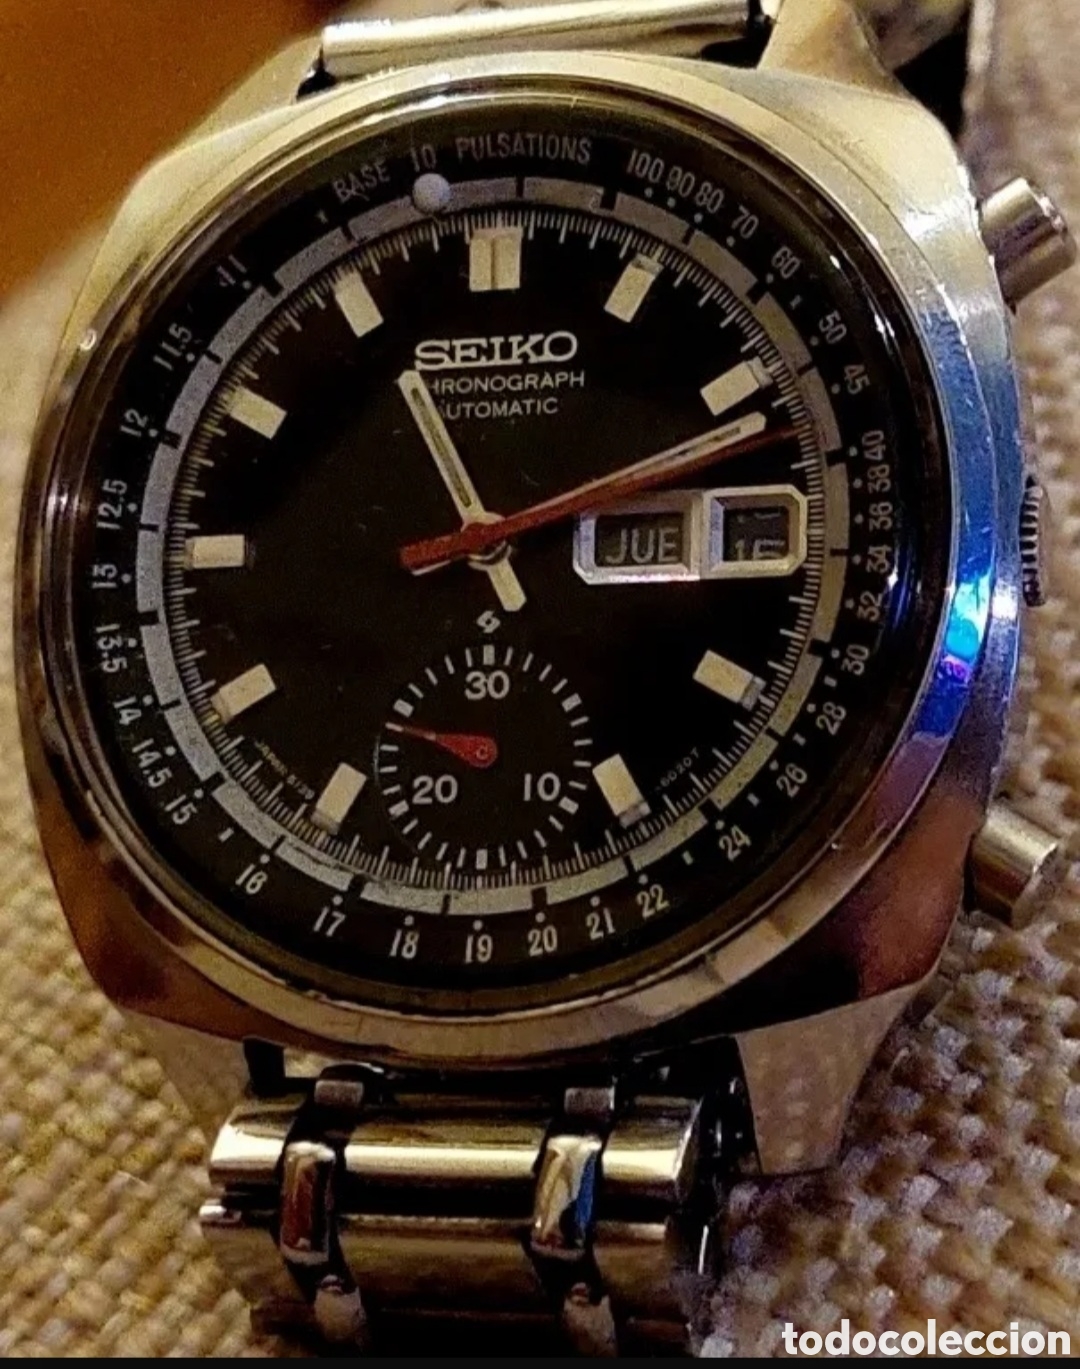 reloj seiko pulsations 6139 6020 crono chronogr - Acheter Montres-bracelets  automatiques anciennes sur todocoleccion